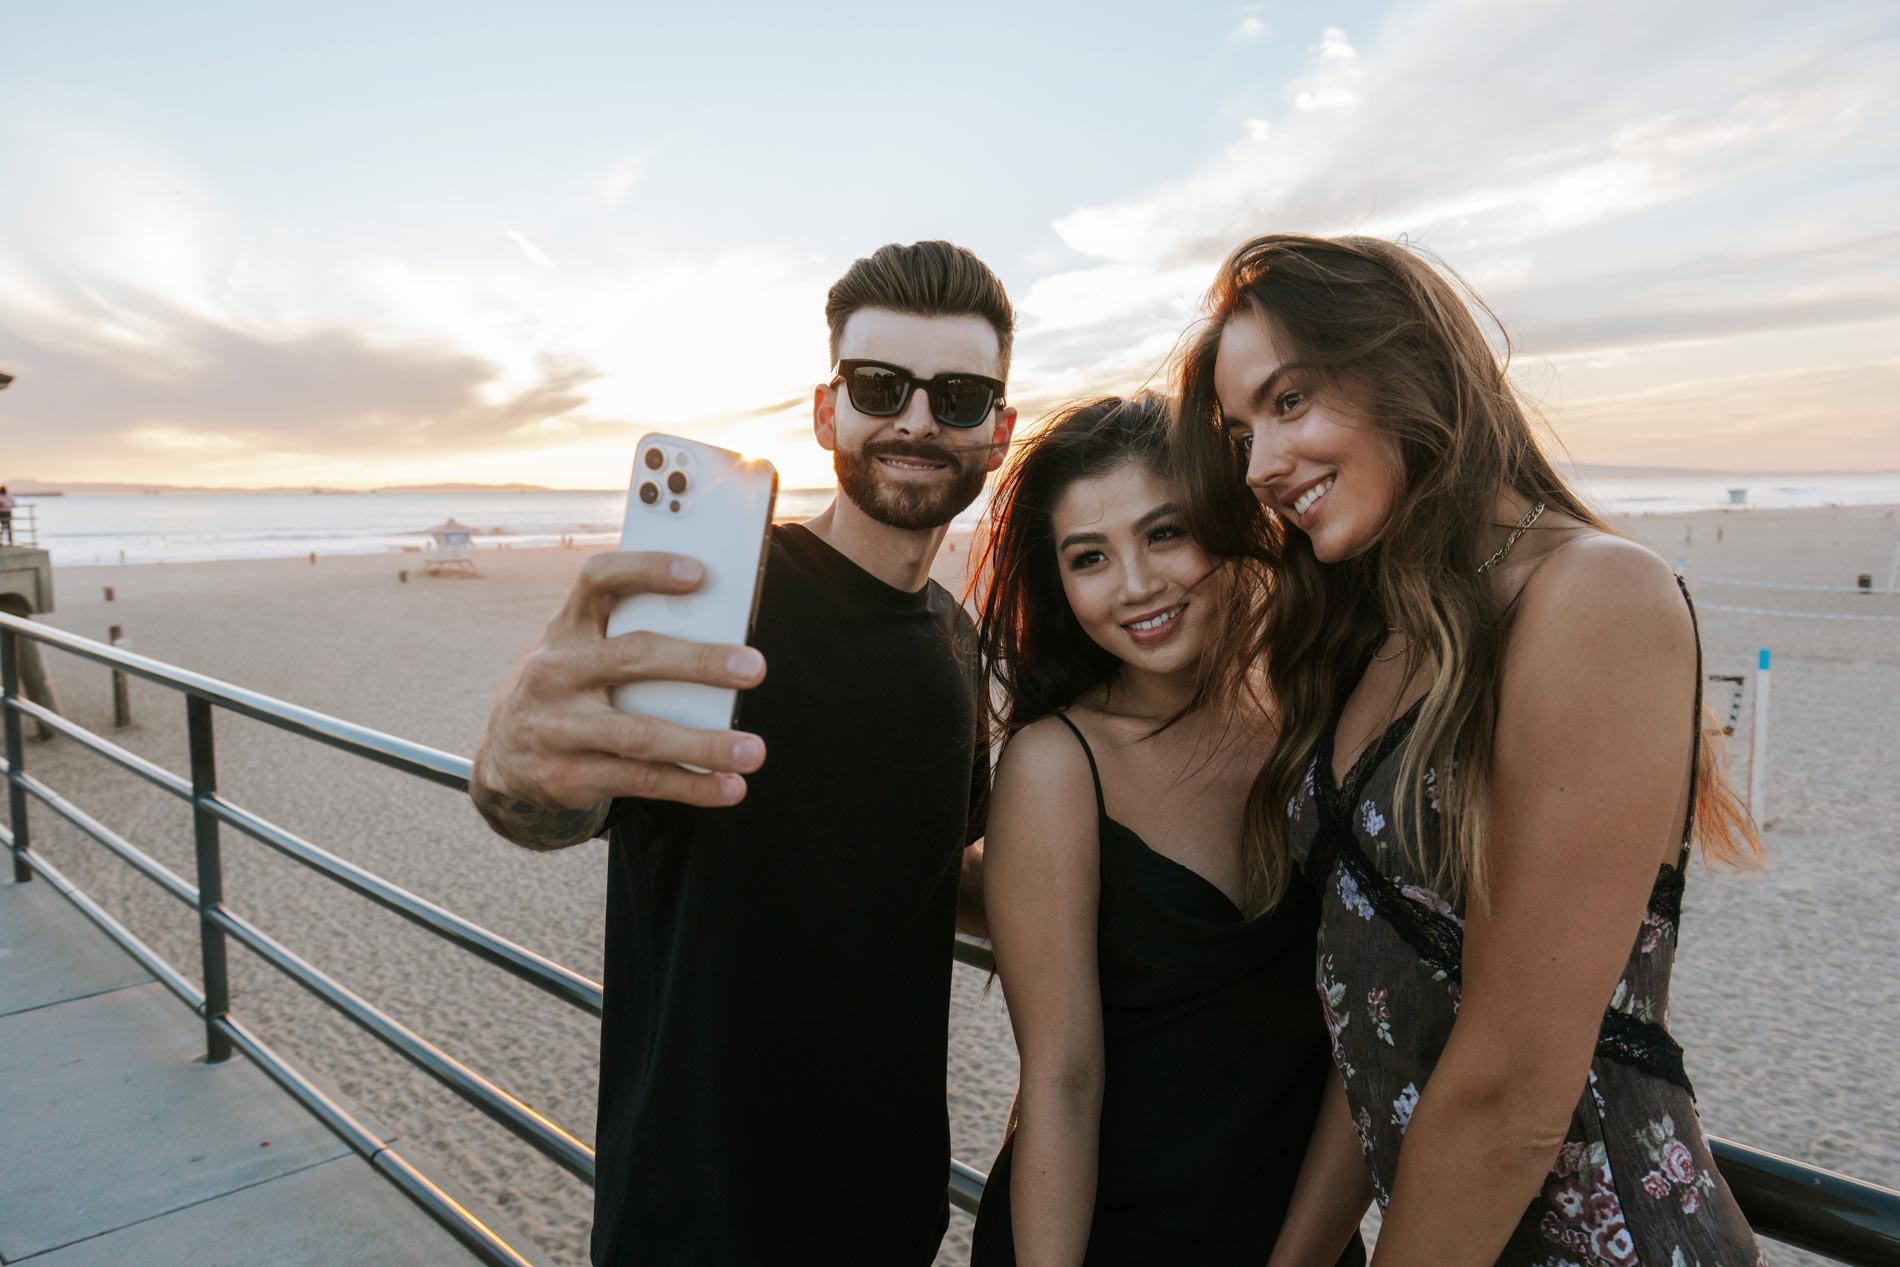 Beach and Ocean people take selfie by beach